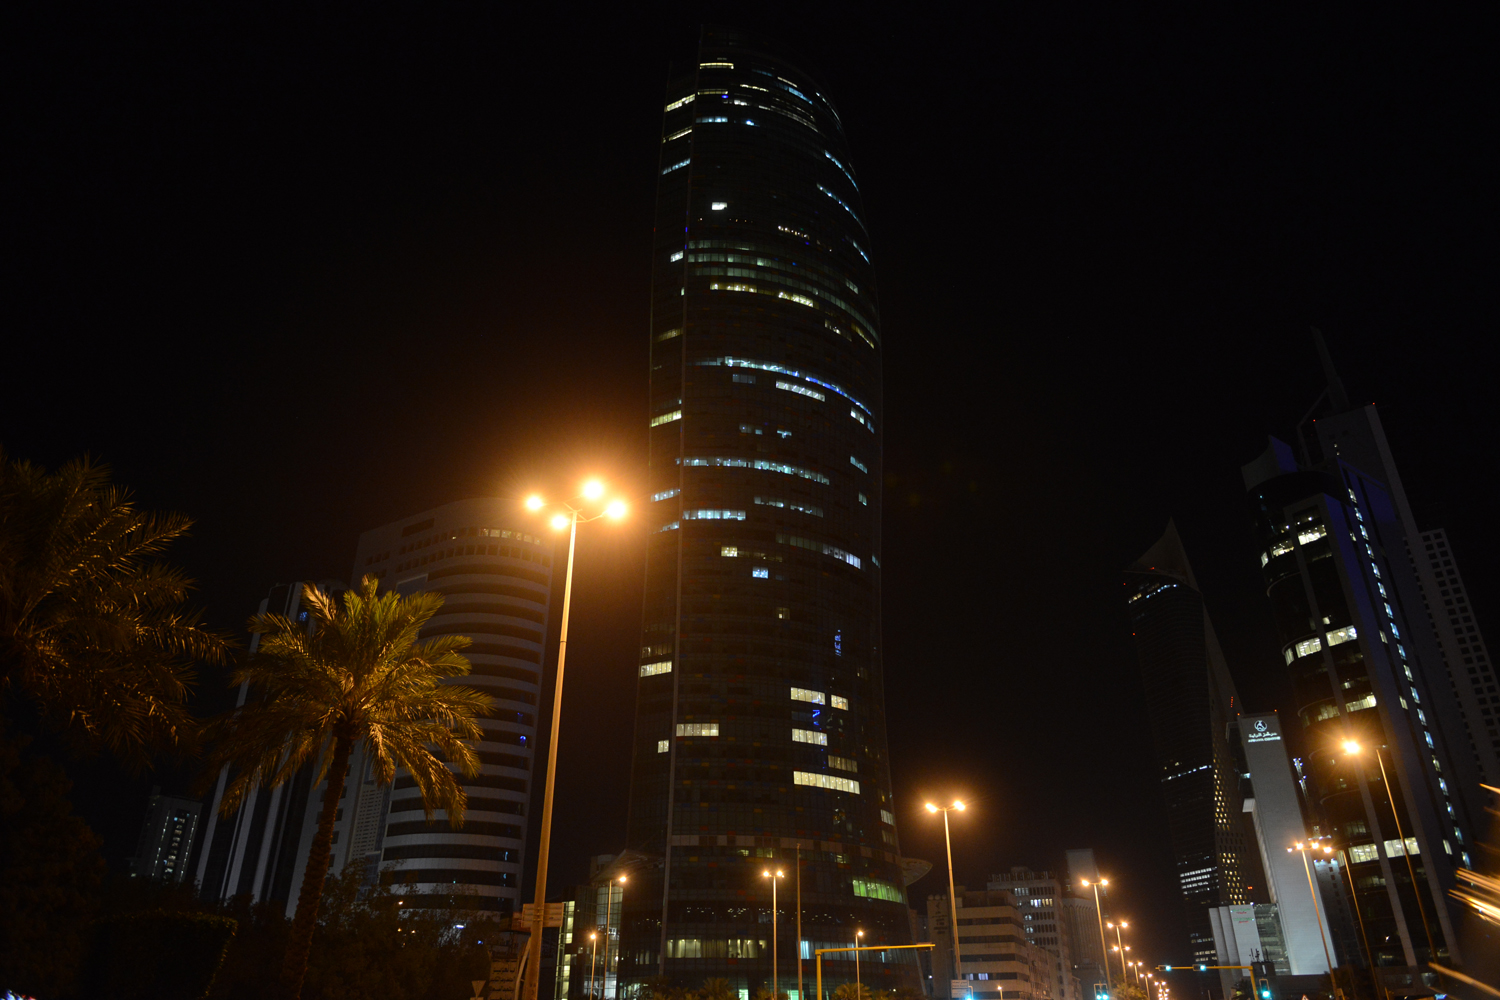 جانب من اطفاء اضواء المباني بمدينة الكويت